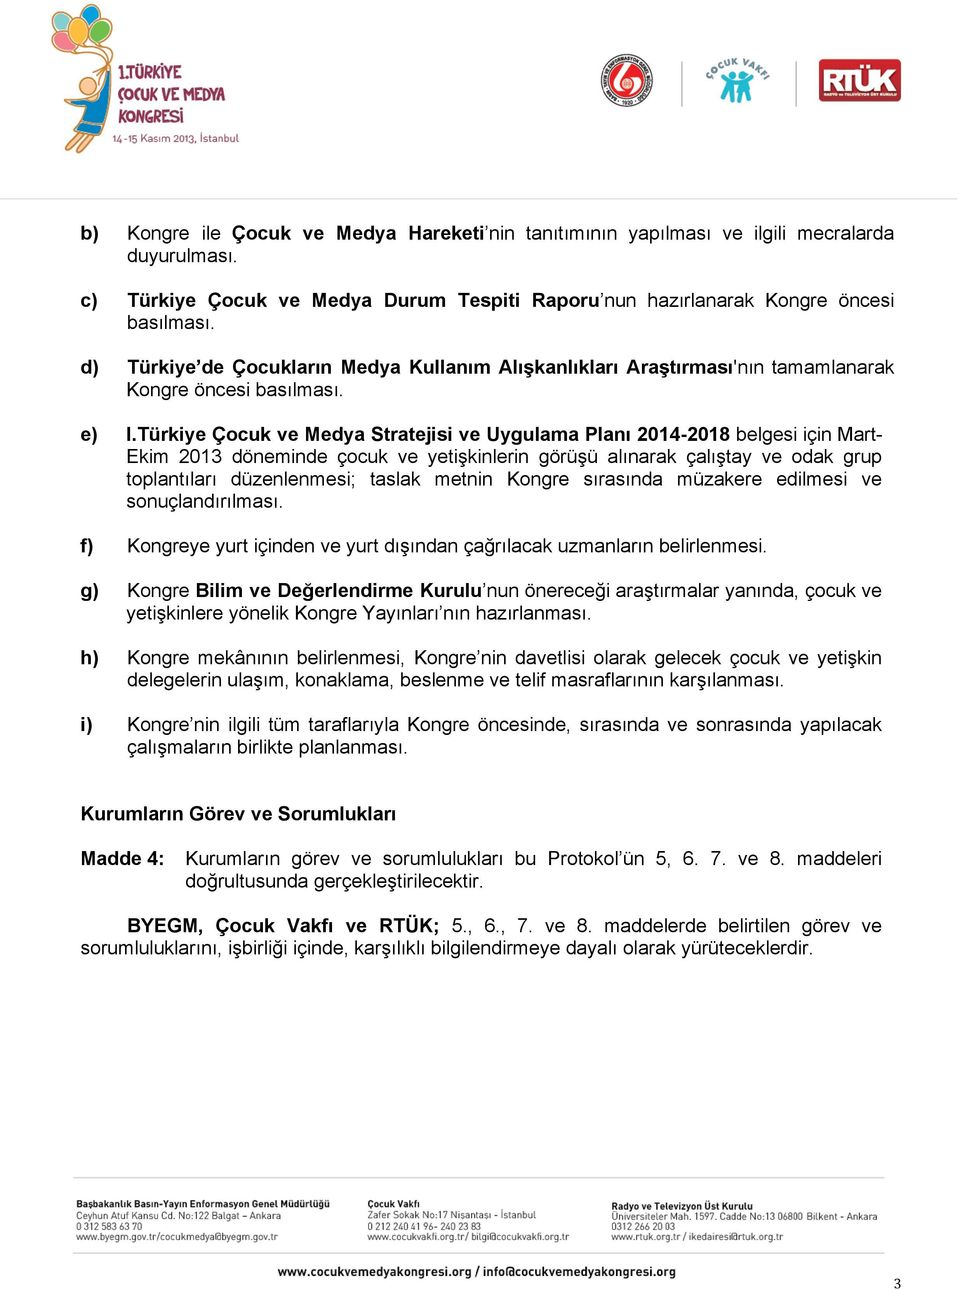 Türkiye Çocuk ve Medya Stratejisi ve Uygulama Planı 2014-2018 belgesi için Mart- Ekim 2013 döneminde çocuk ve yetişkinlerin görüşü alınarak çalıştay ve odak grup toplantıları düzenlenmesi; taslak